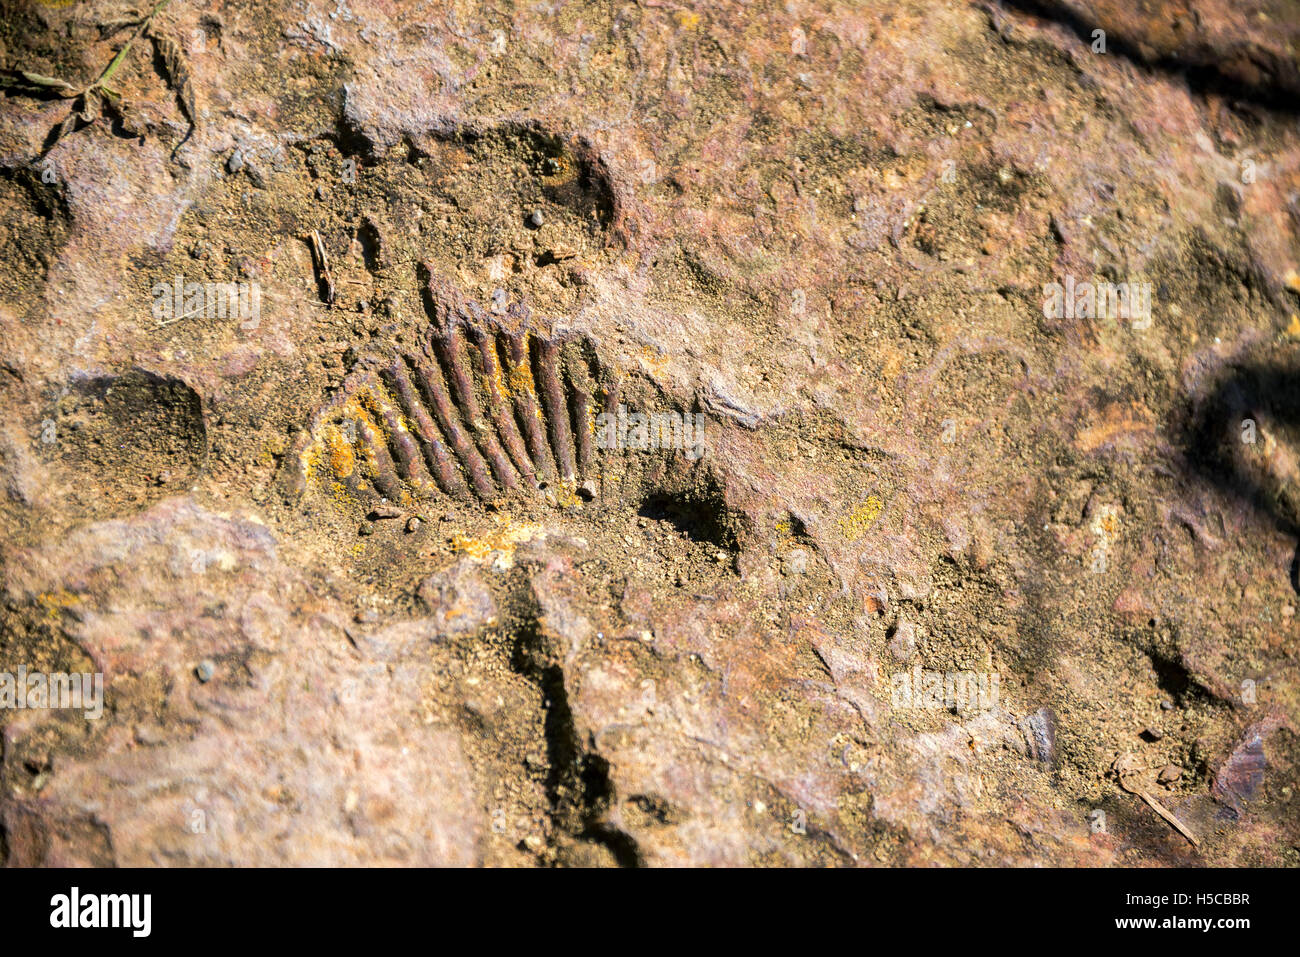 Vue d'un fossile d'ammonite près de Barichara, Colombie Banque D'Images